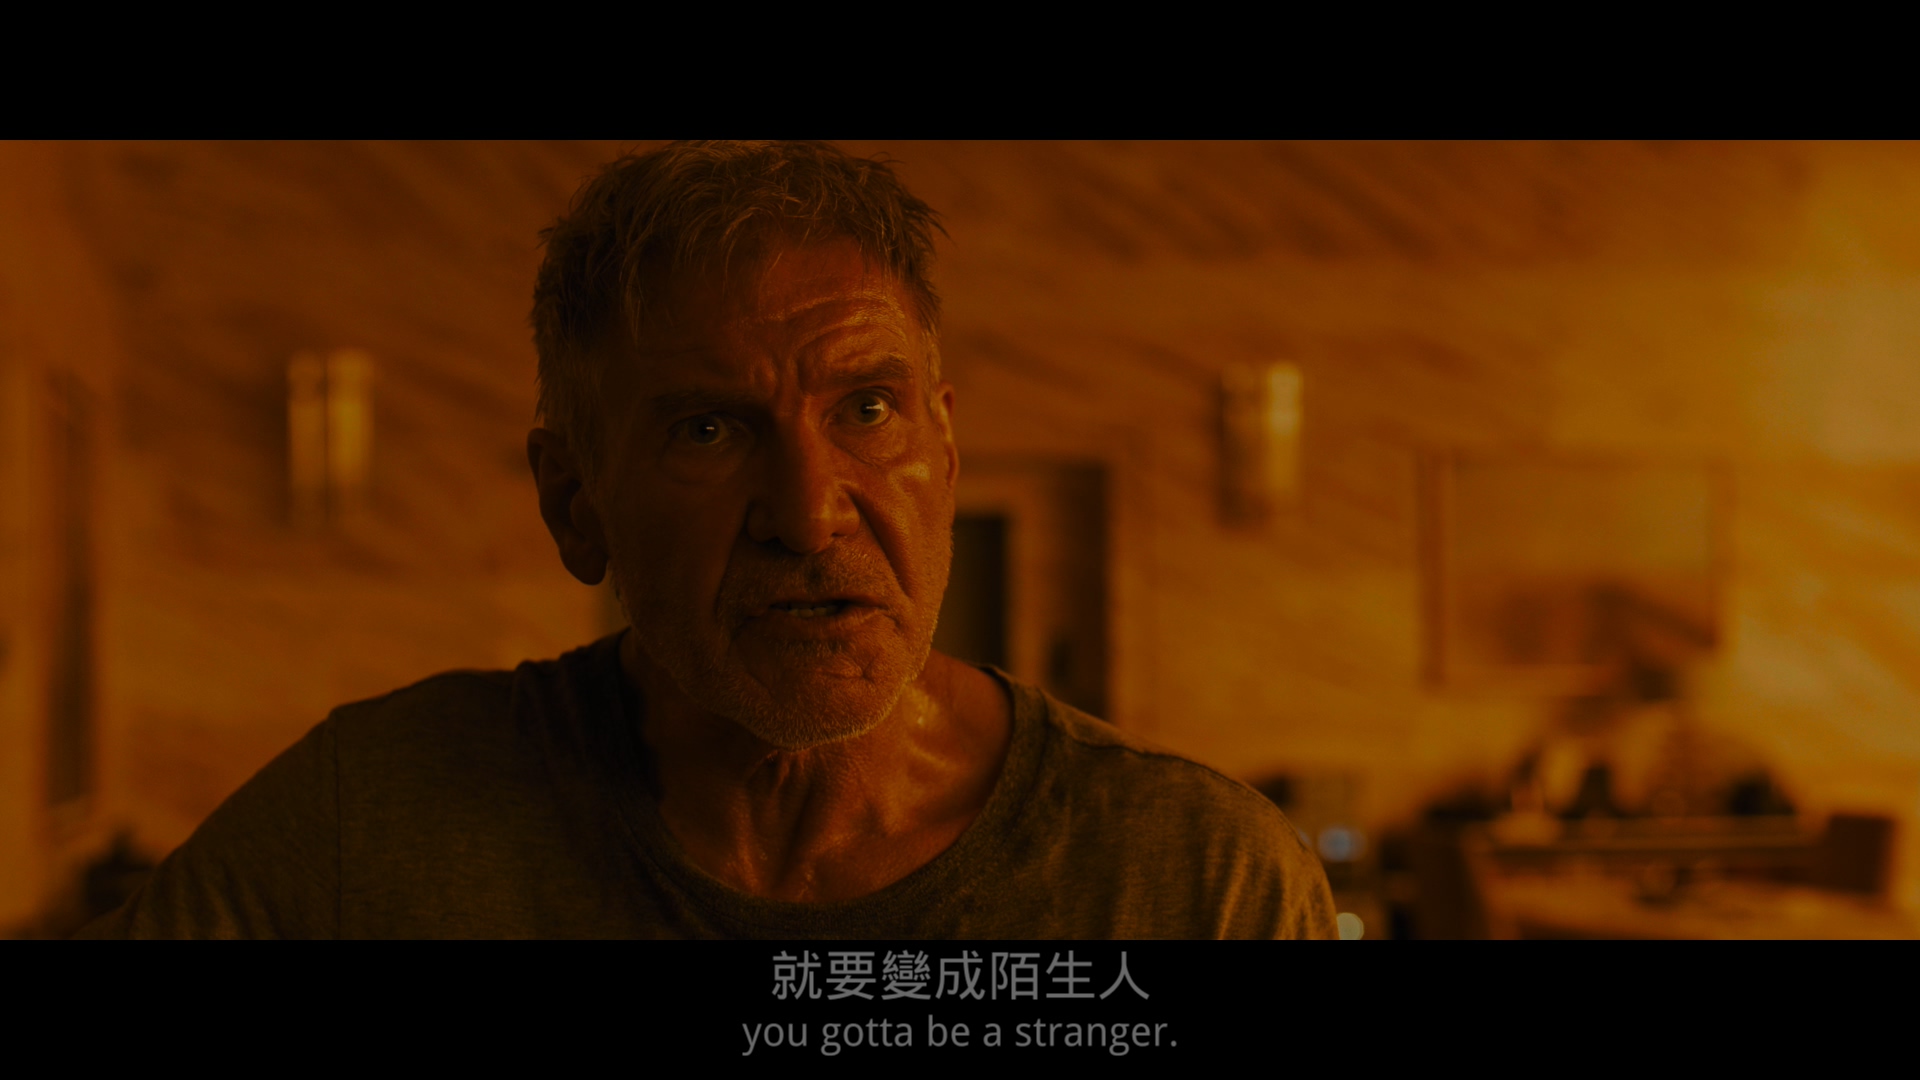 银翼杀手2049 [DIY简繁/简繁双语字幕] 高码版 4K UHD原盘 Blade Runner 2049 2017 2160p UHD Blu-ray HEVC Atmos-wezjh@OurBits     [83.59 GB ]-5.jpg